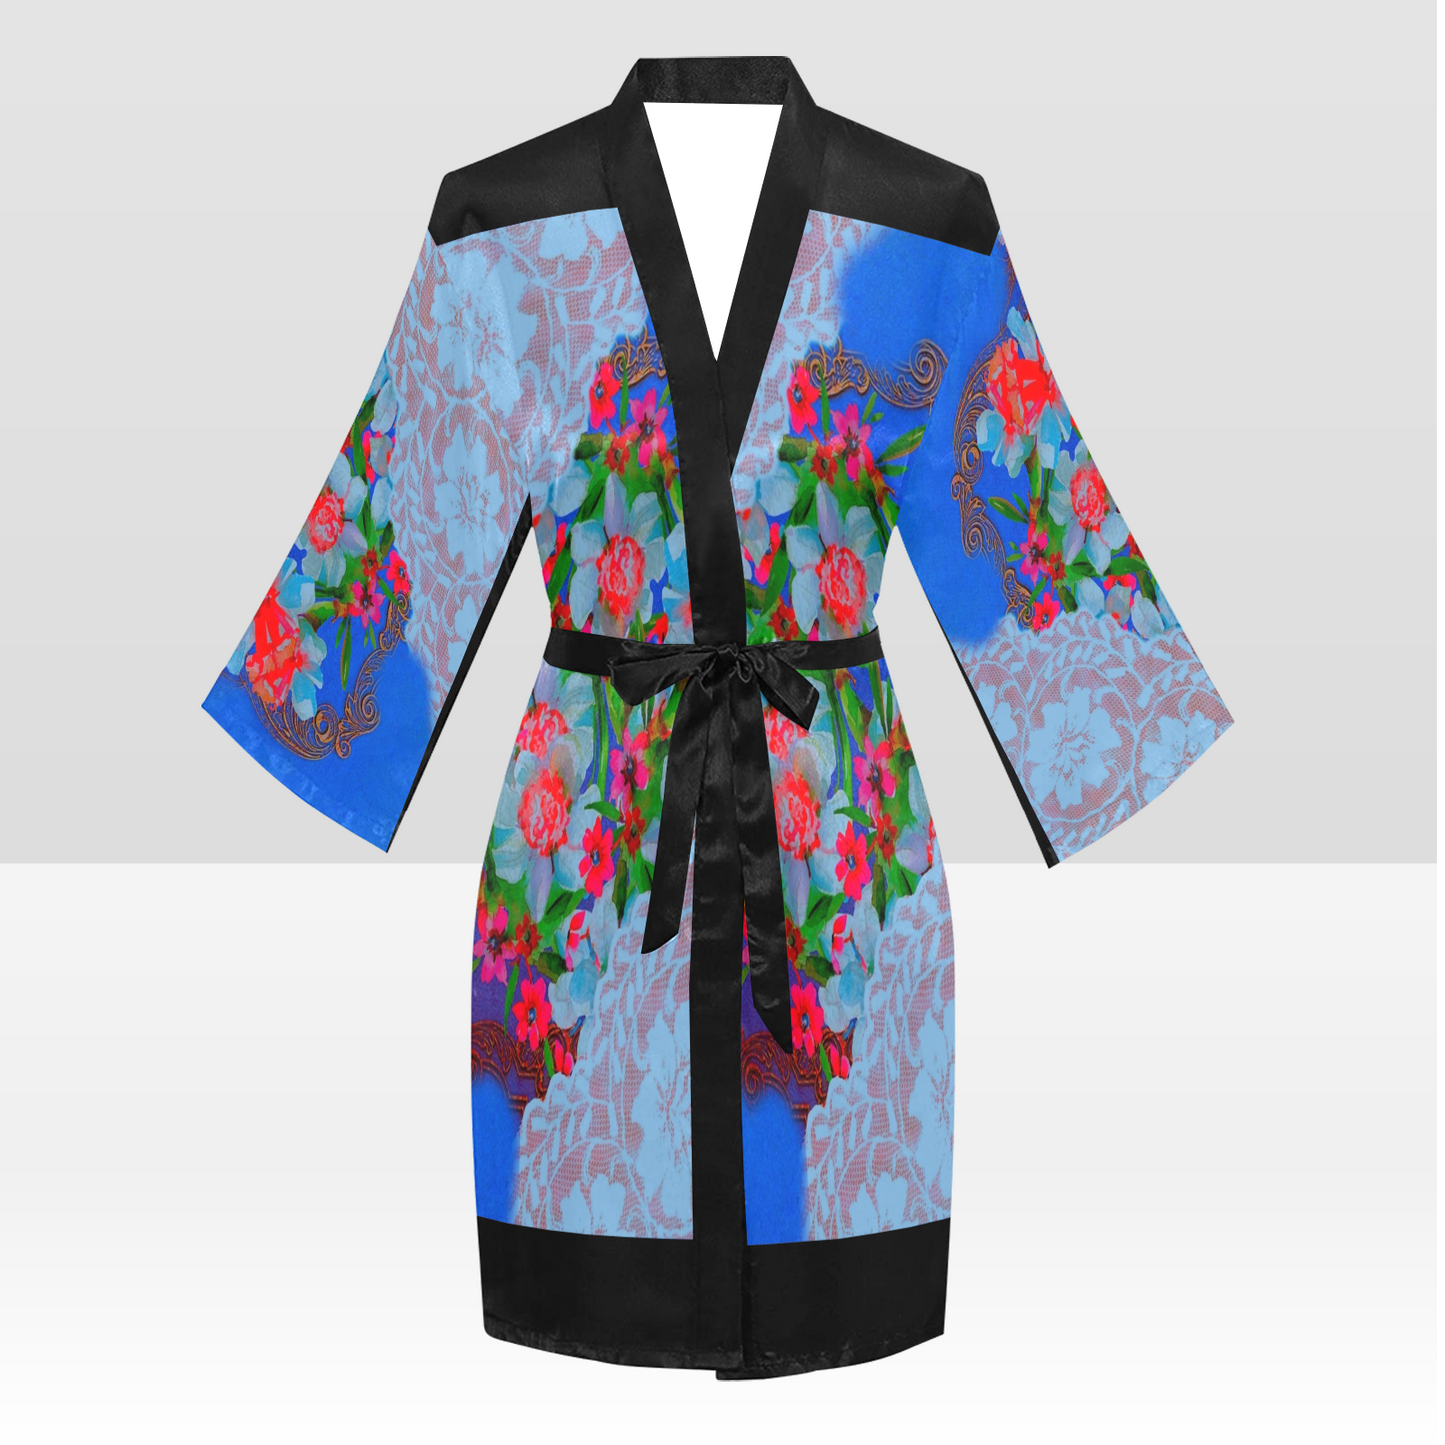 Victorian Lace Kimono Robe, Black or White Trim, Sizes XS to 2XL, Design 46